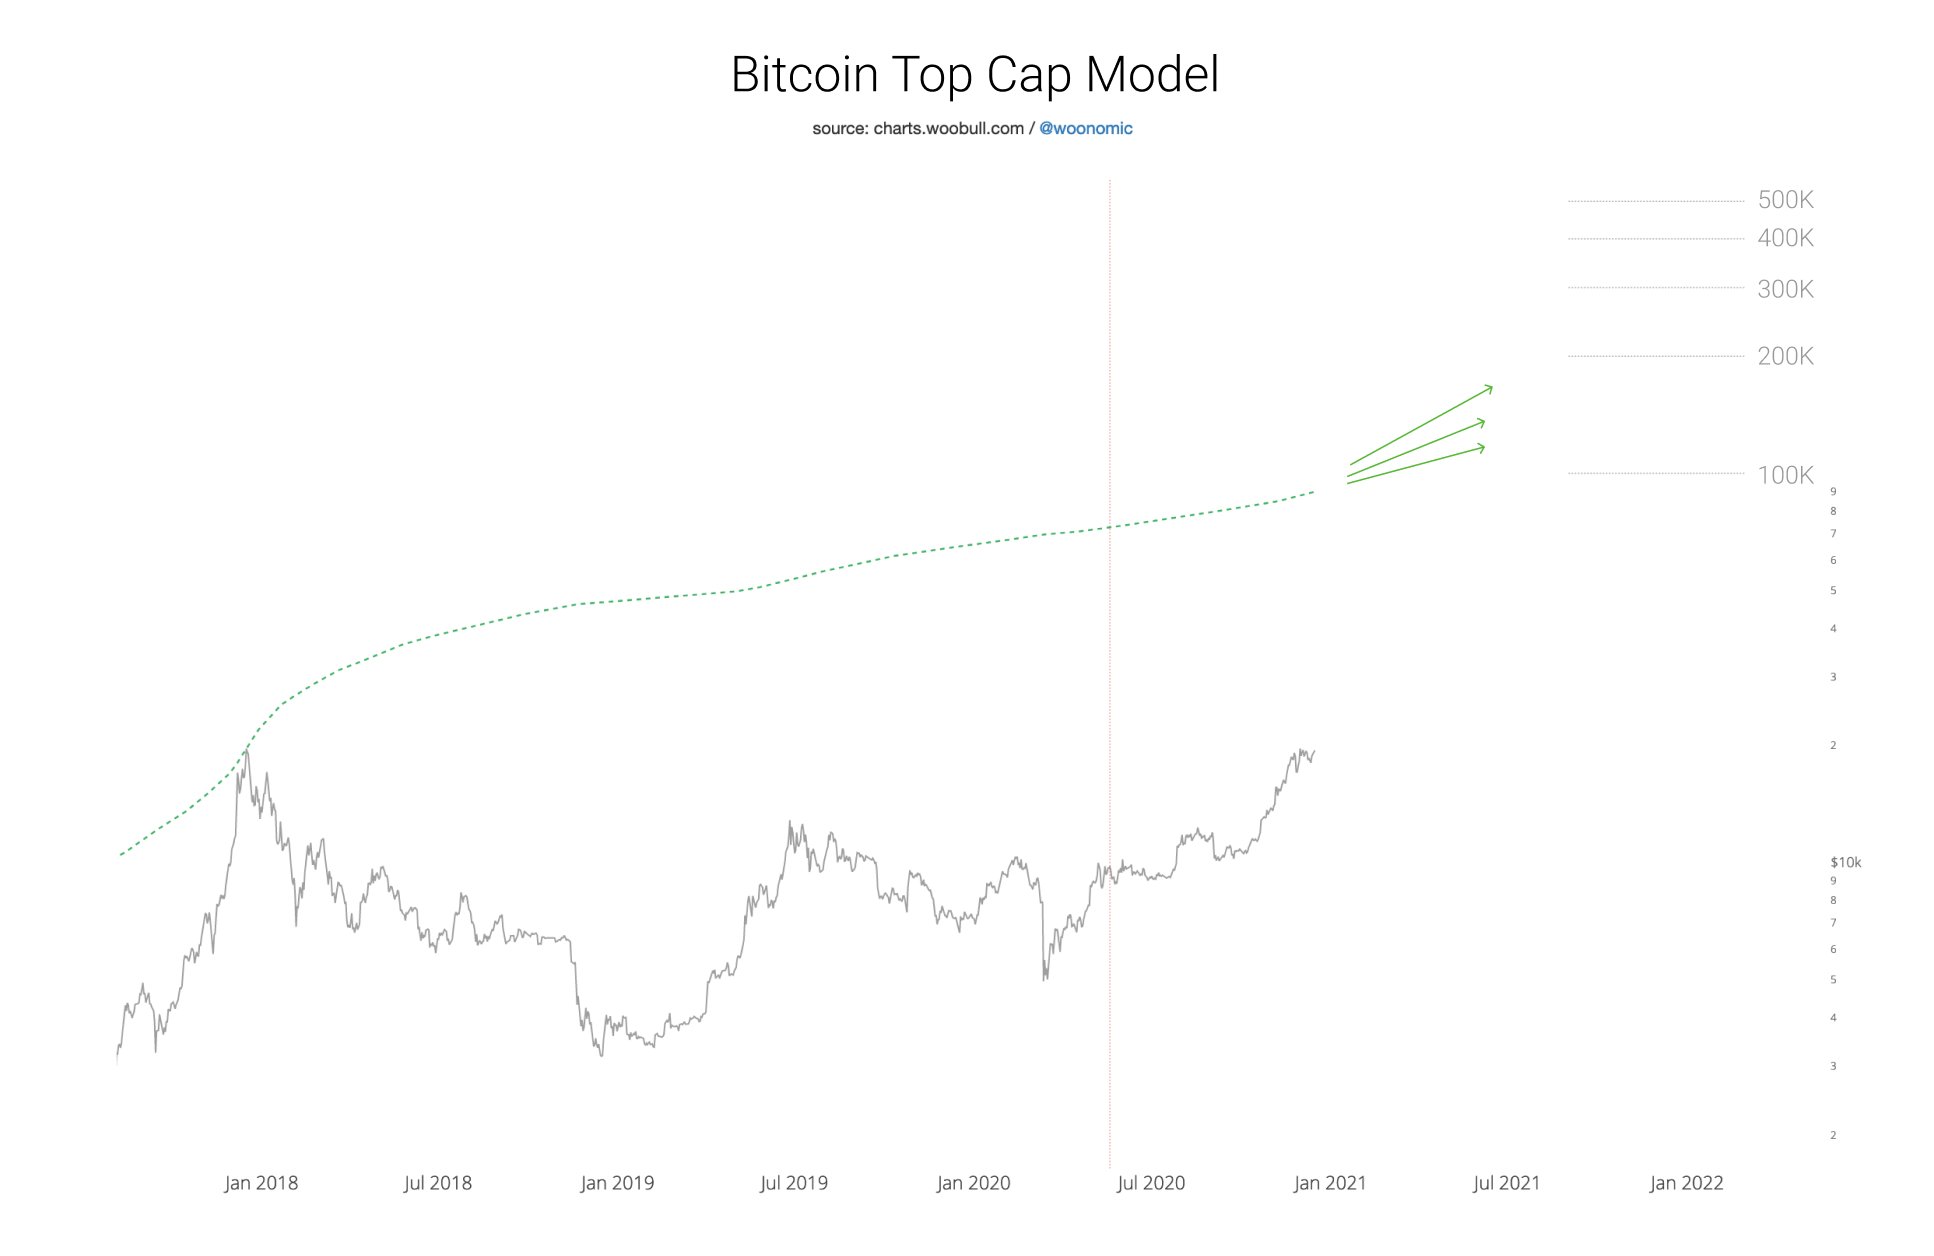 مدل Bitcoin Top Cap 100000 دلار به عنوان یک هدف محافظه کارانه در نظر گرفته است. منبع : Woobull.com 